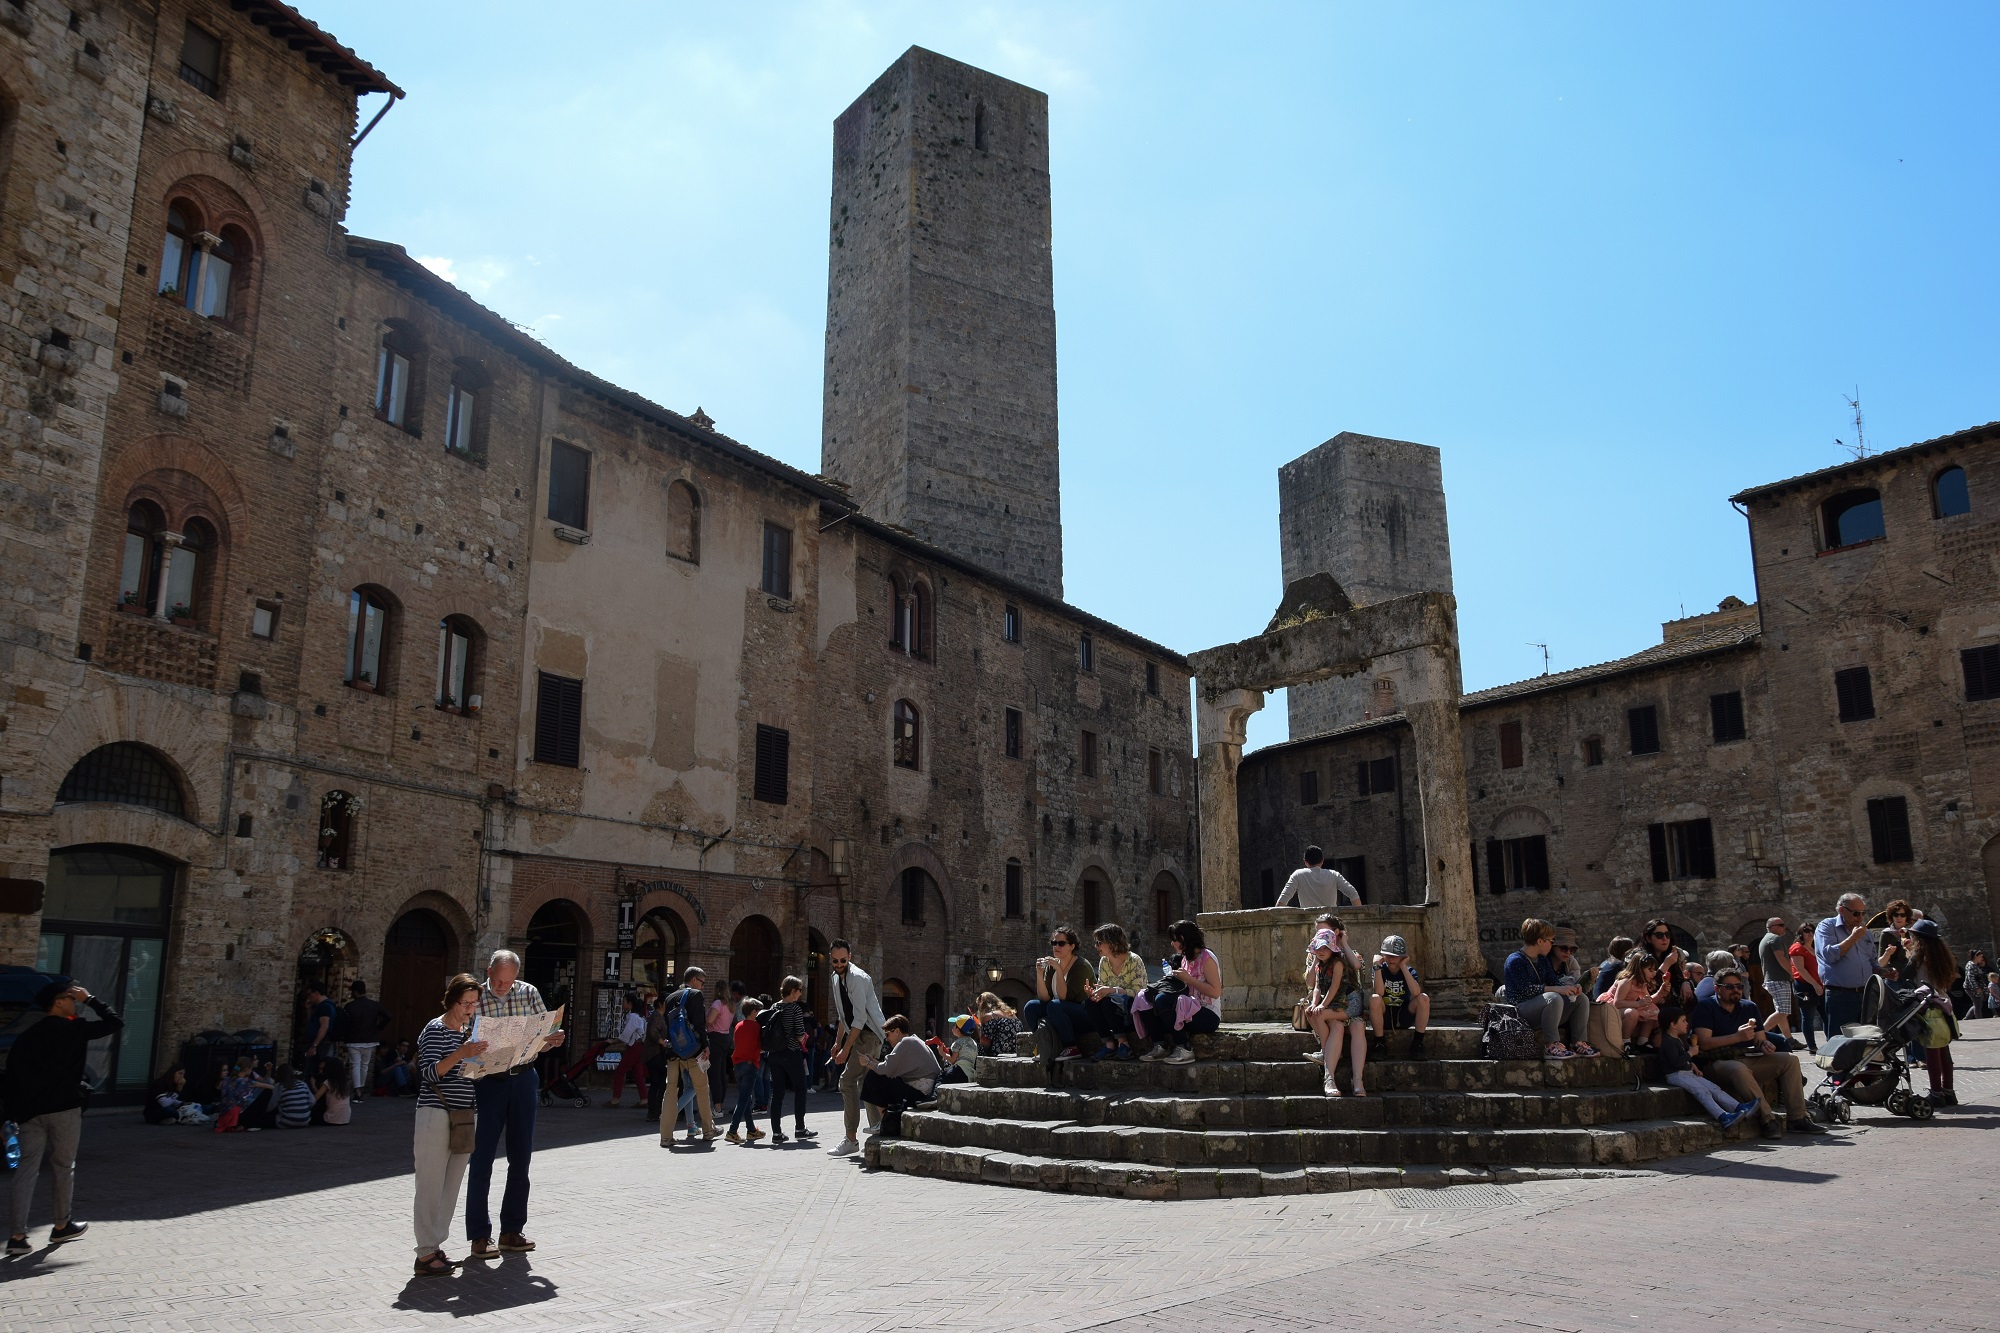 Piazza della Cisterna in San Gimignano